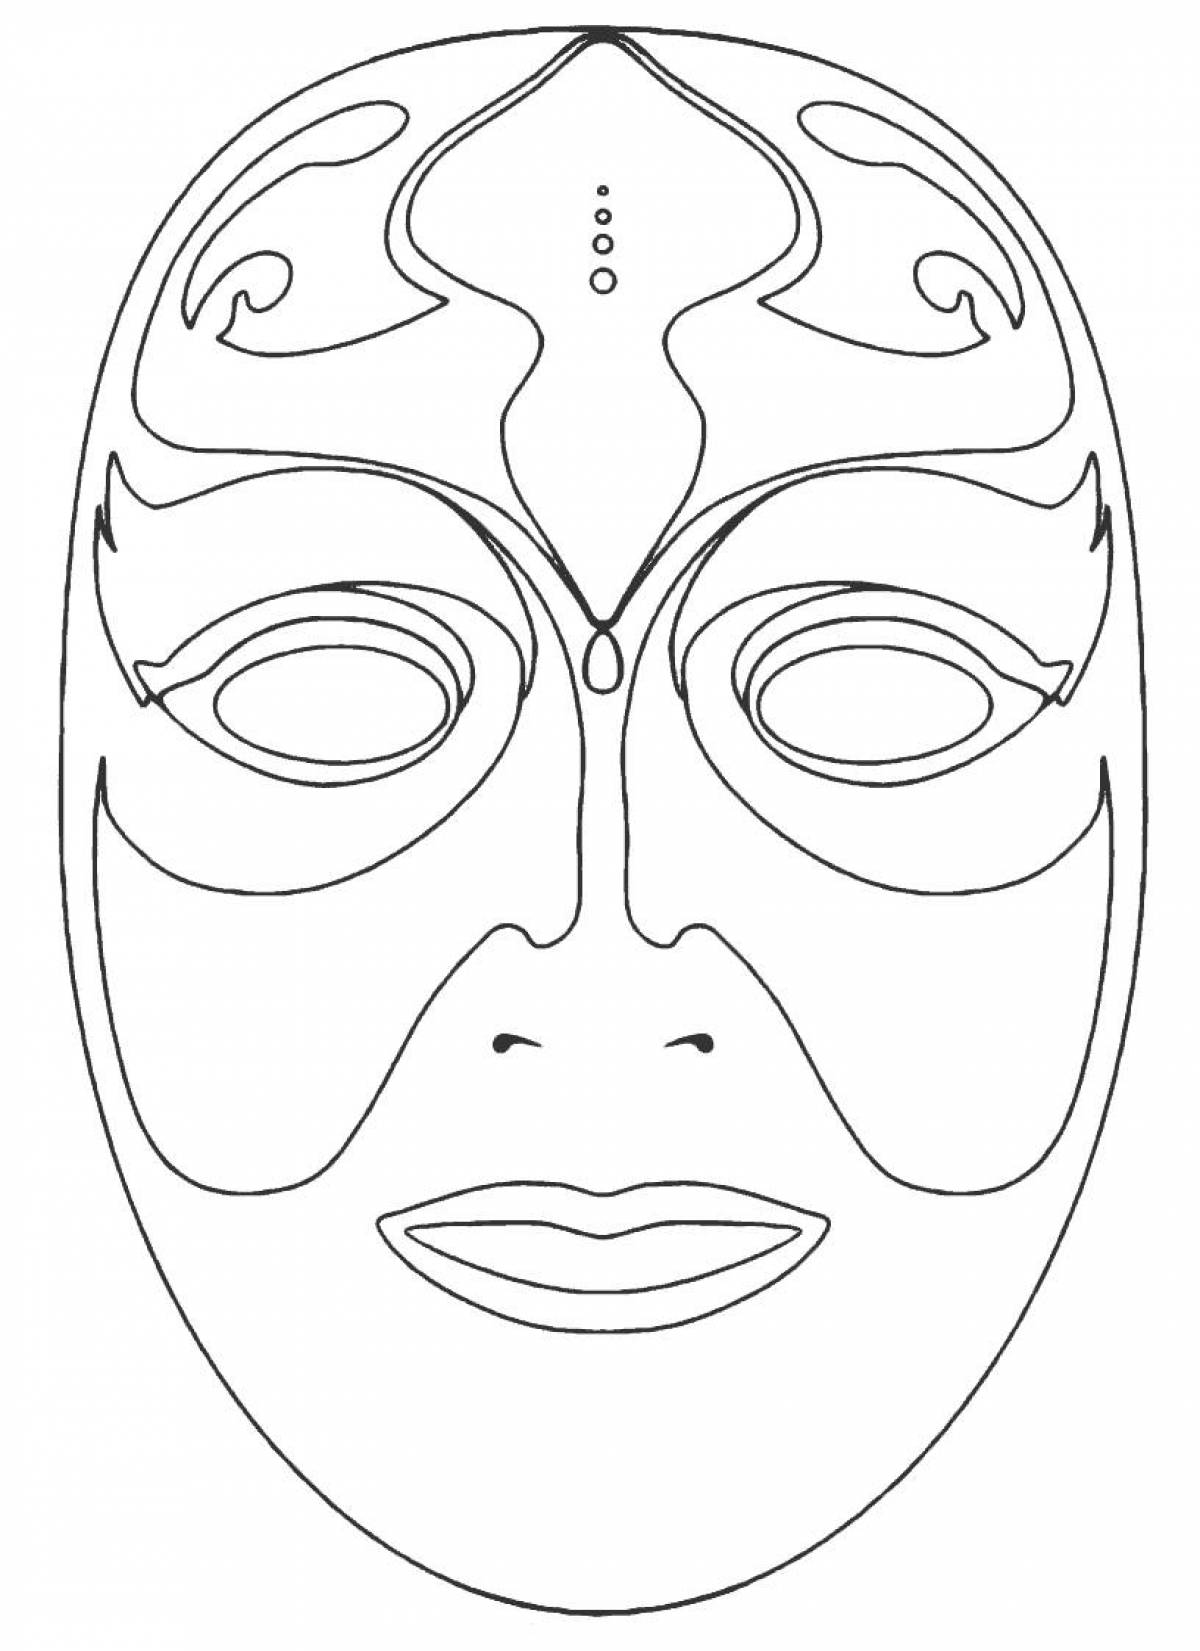 Распечатать картинку маску. Макет маски для лица. Карнавальная маска раскраска. Трафарет маски для лица. Карнавальные маски раскраски для детей.